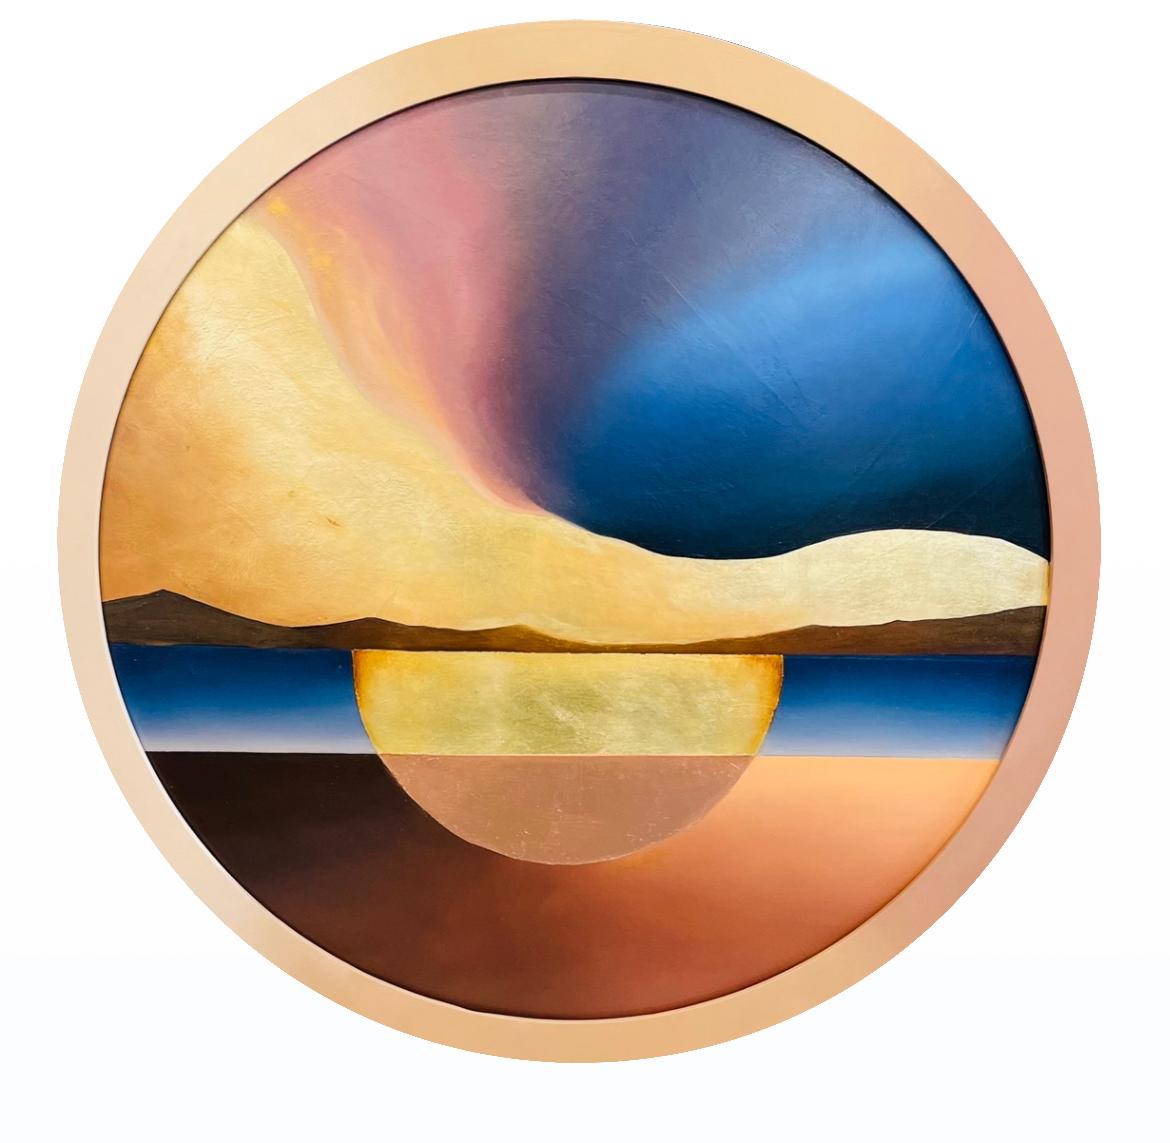 Dans l'œil de la vague par Lyora Pissarro 

2023
Peinture à l'huile sur carton
Diamètre de 39 pouces
Signé et daté au verso

L'expédition n'est pas incluse. Veuillez nous contacter pour obtenir un devis d'expédition et des options de